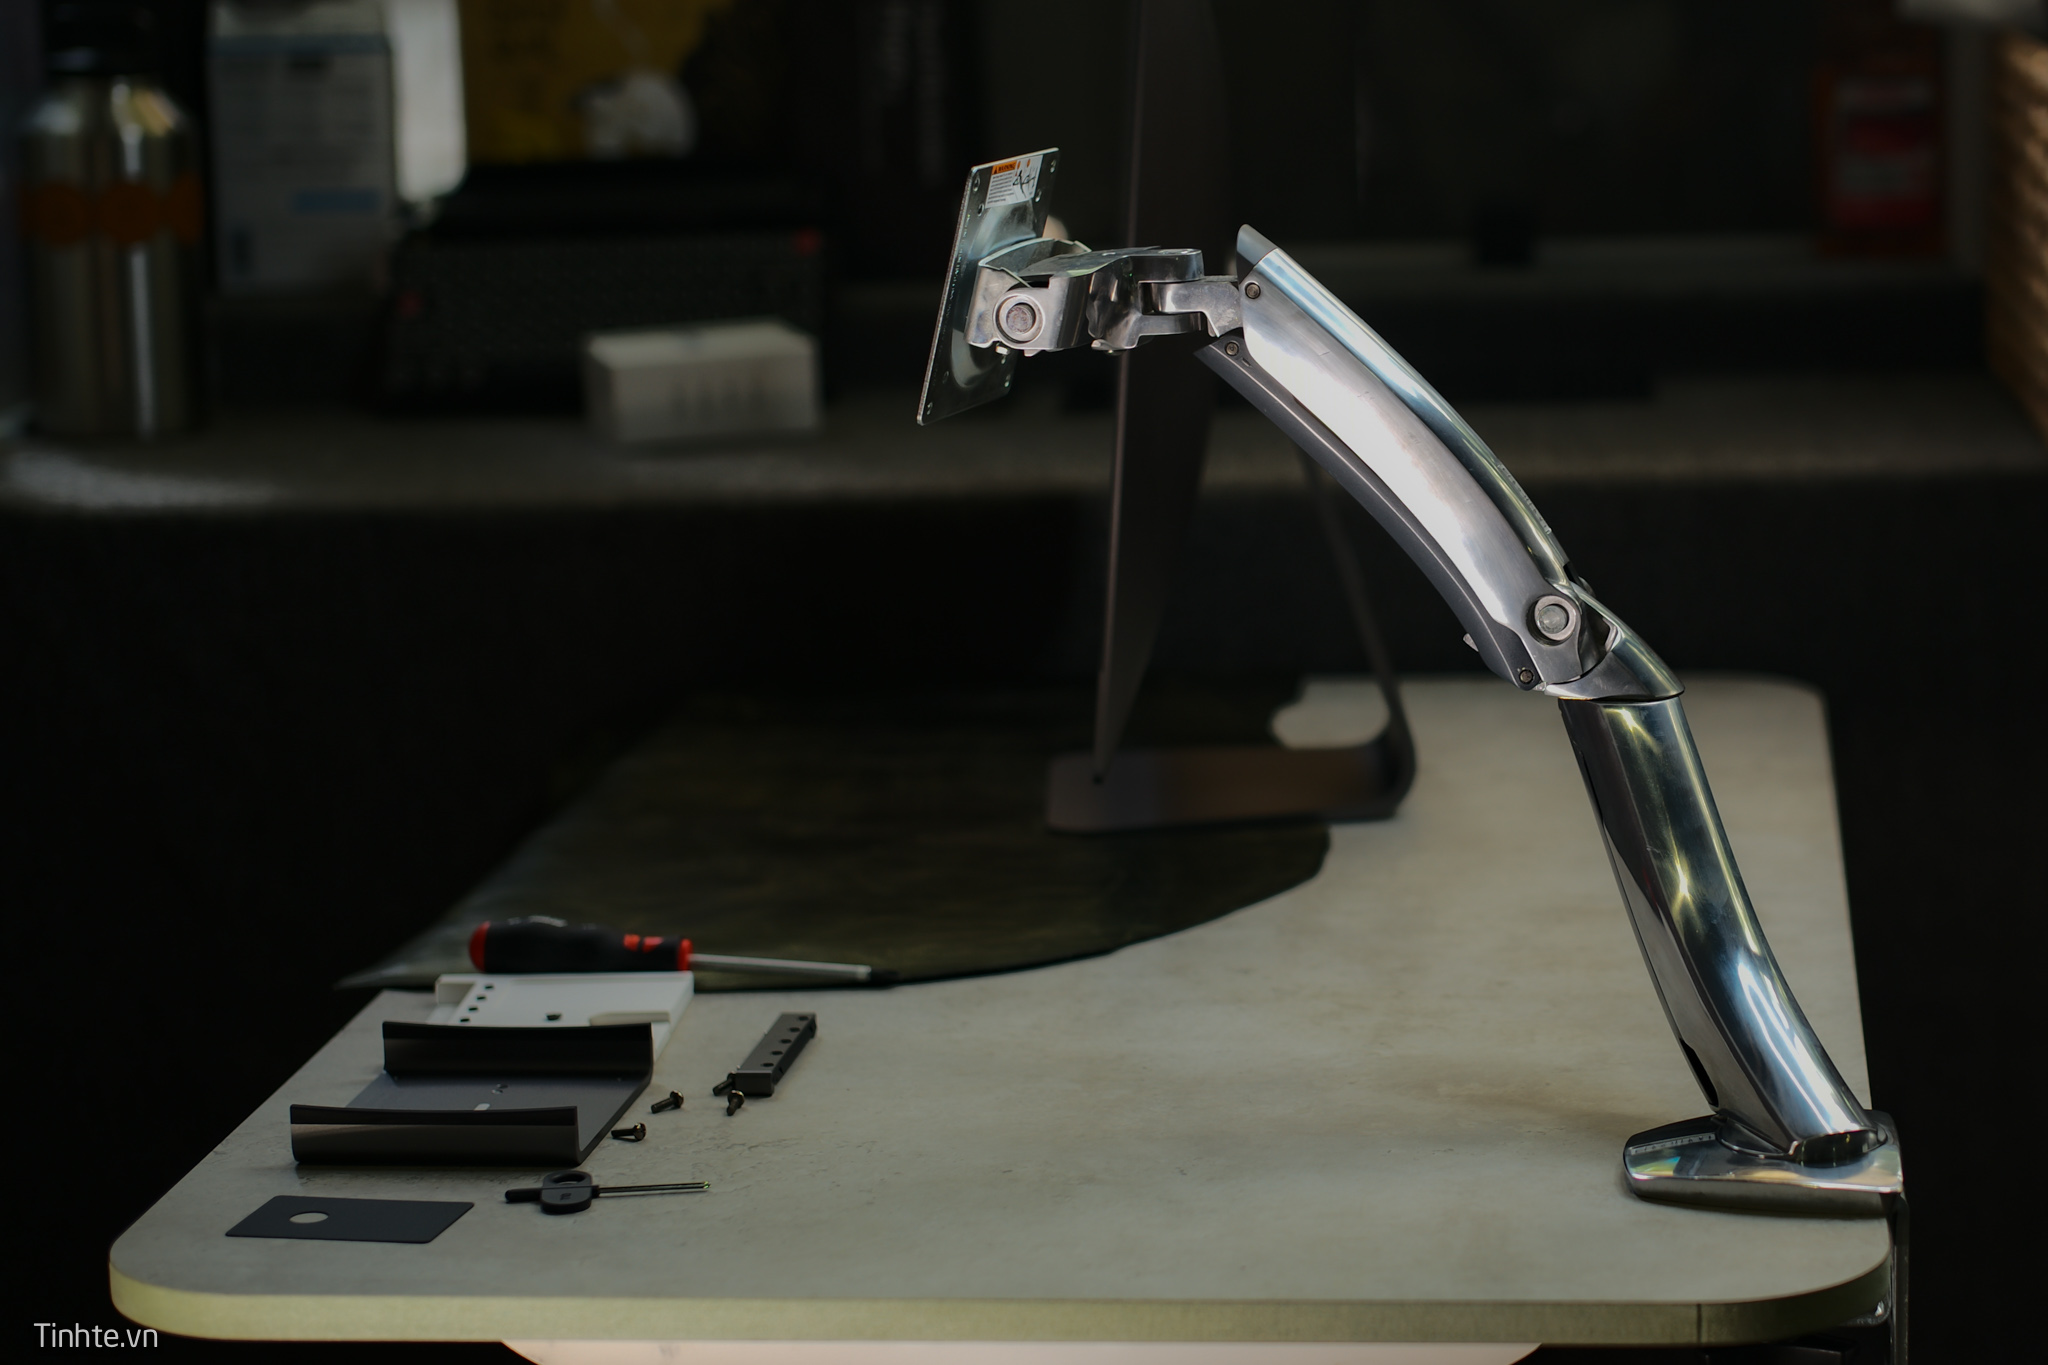 Ergotron Mx Desktop Arm: Tay đỡ màn hình 185usd nhiều góc hơn chân Apple